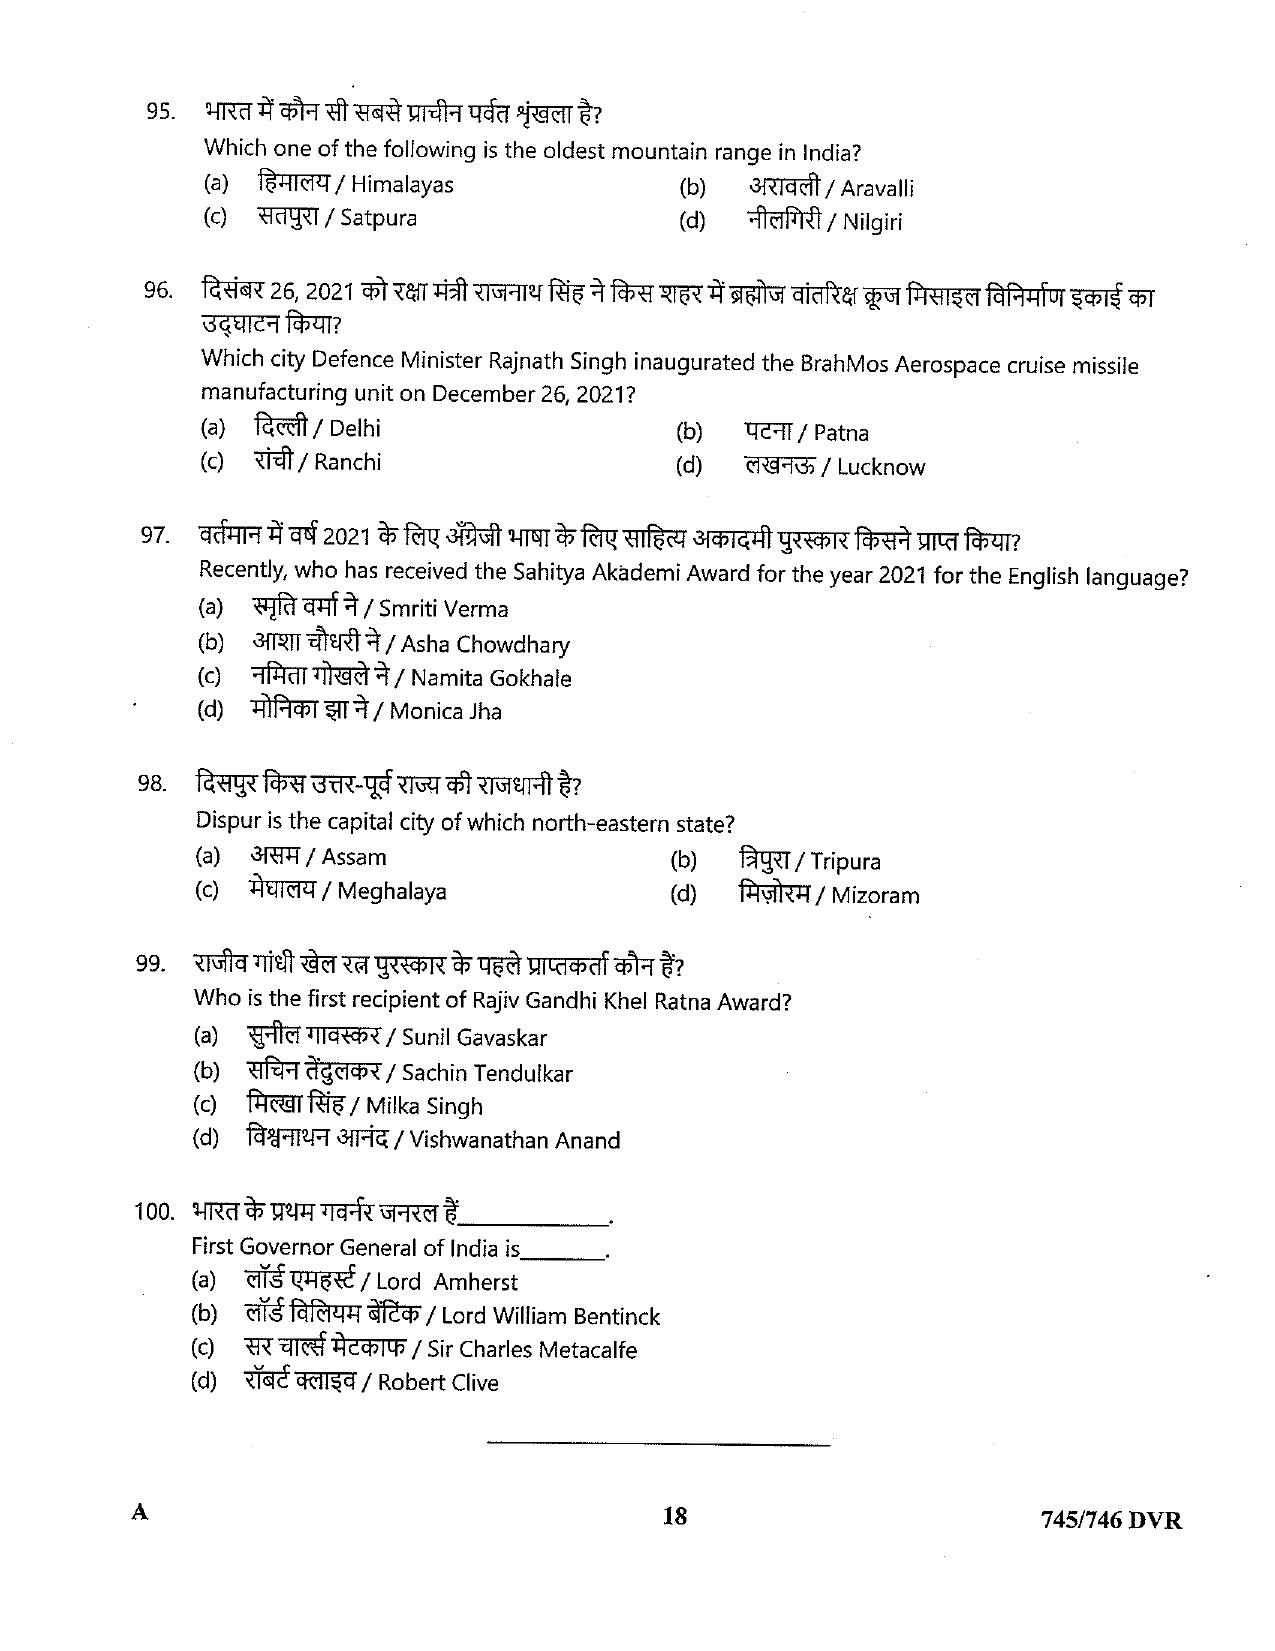 LPSC Driver (LVD/HVD) 2022 Question Paper - Page 18